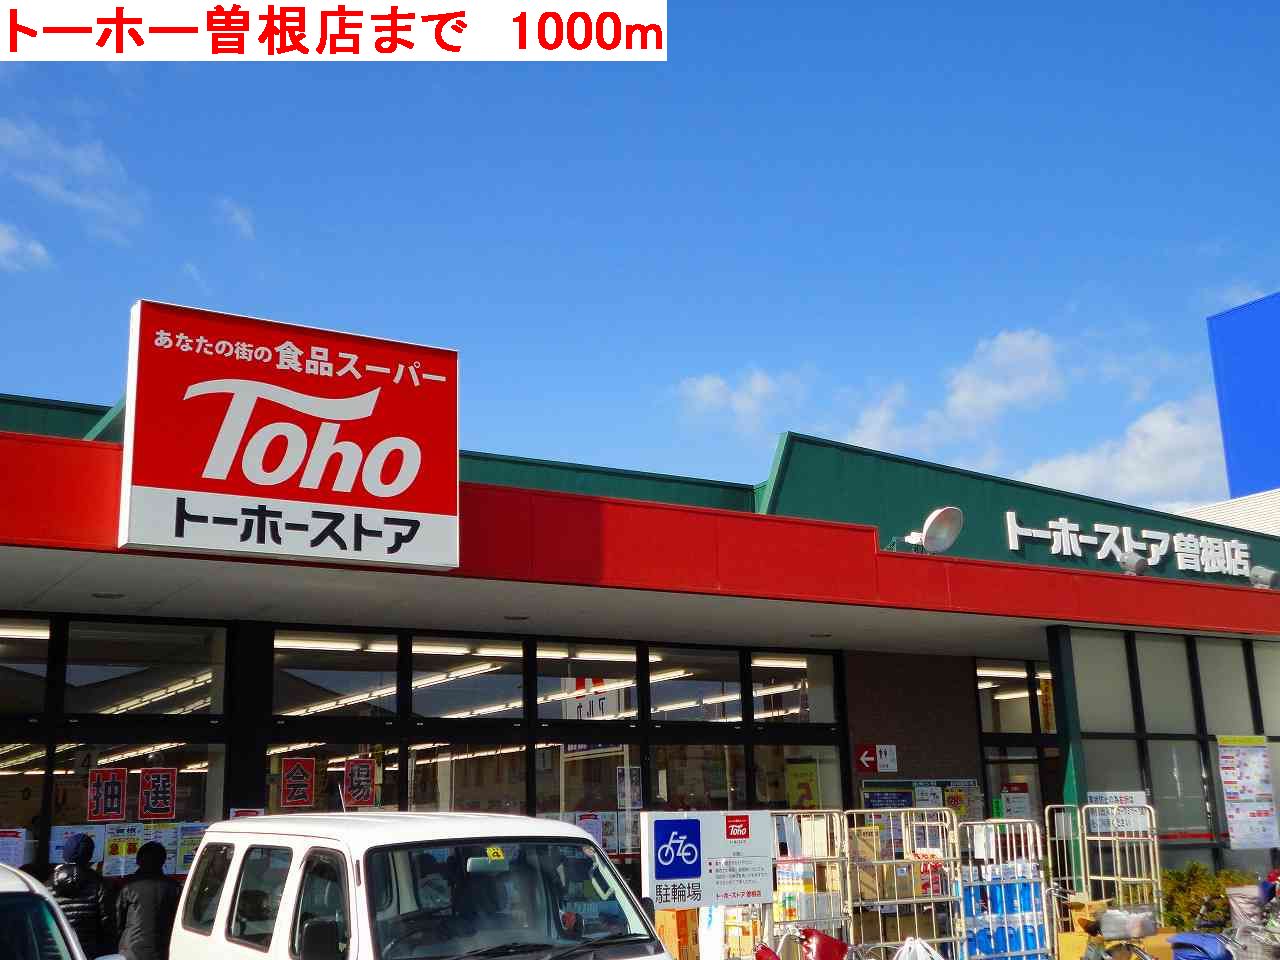 Supermarket. 1000m to Toho Sone store (Super)